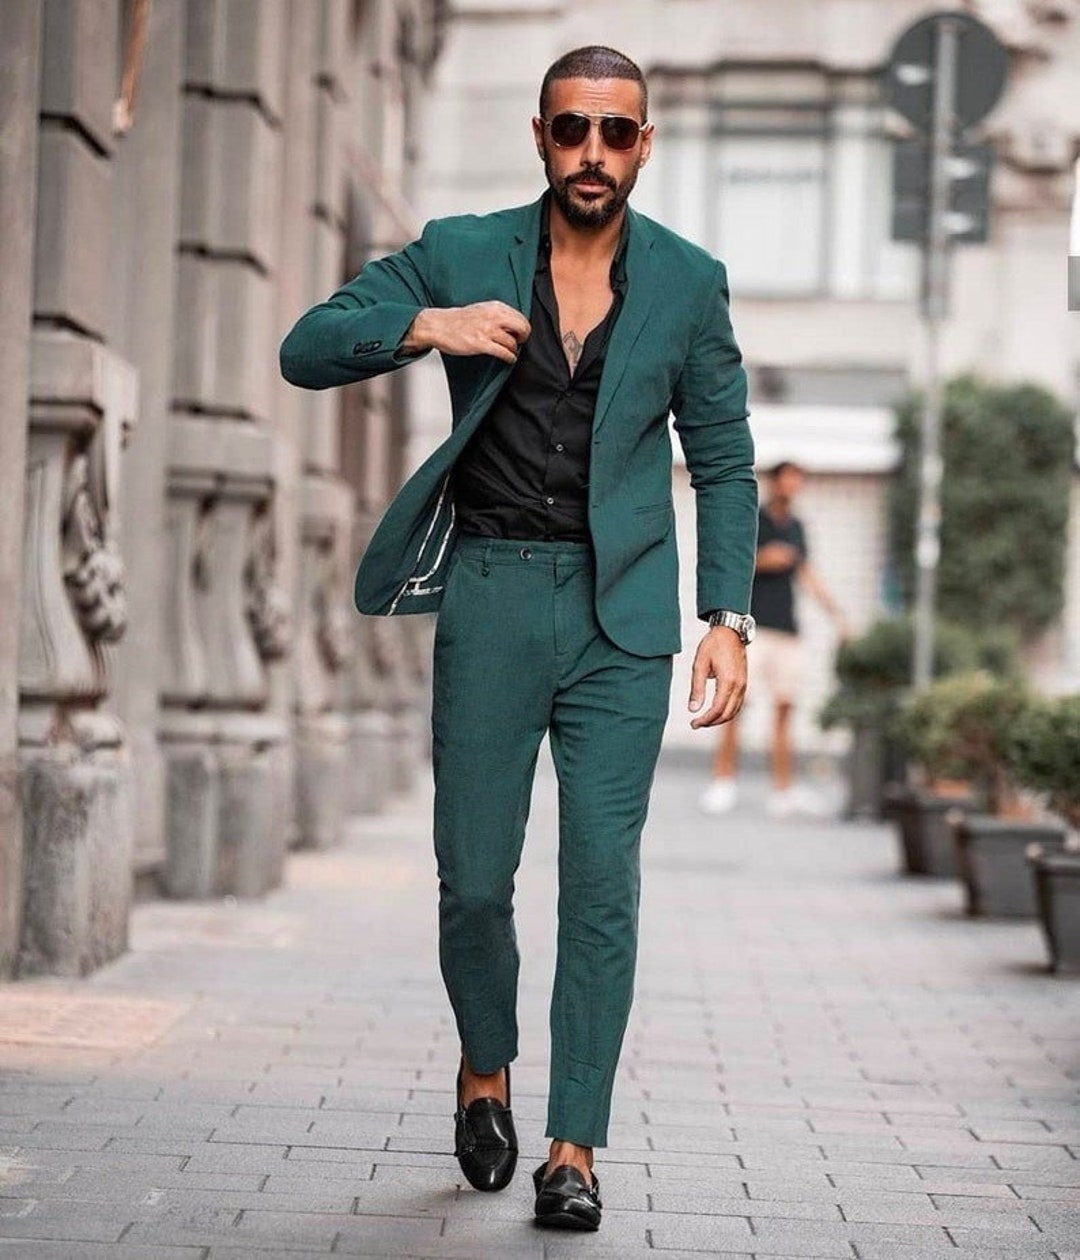 Man Suit-man Green Suit-wedding Suit-dinner Suit-party Wear - Etsy